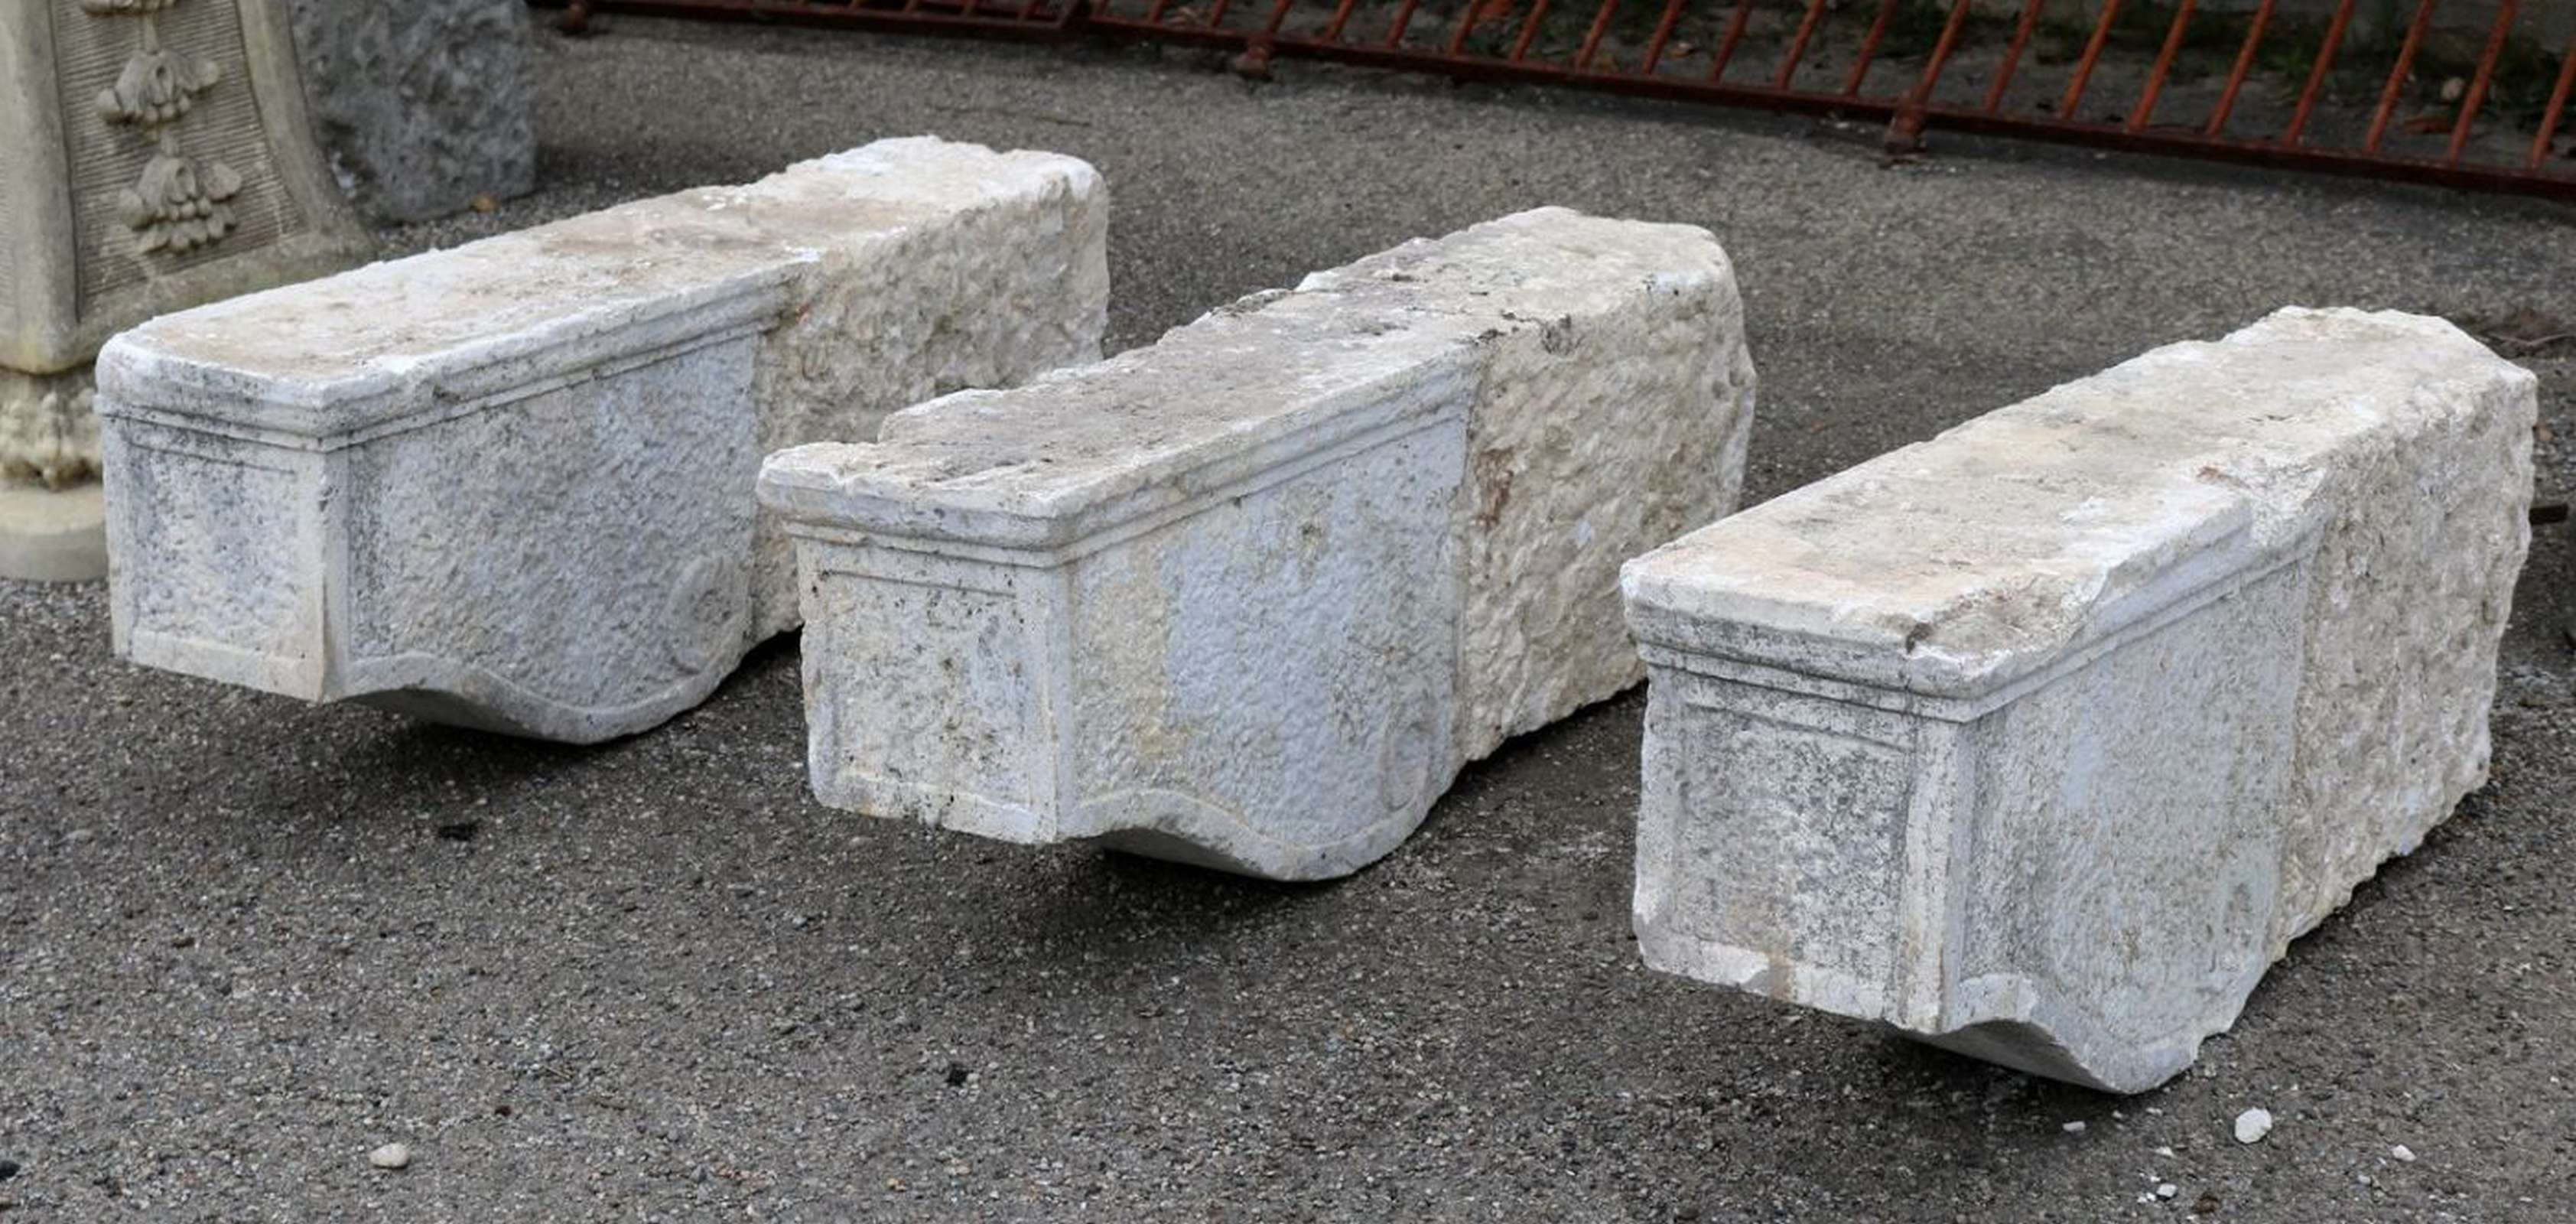 Tre antiche mensole in pietra. Epoca 1800. - Mensole antiche - Architettura - Prodotti - Antichità Fiorillo